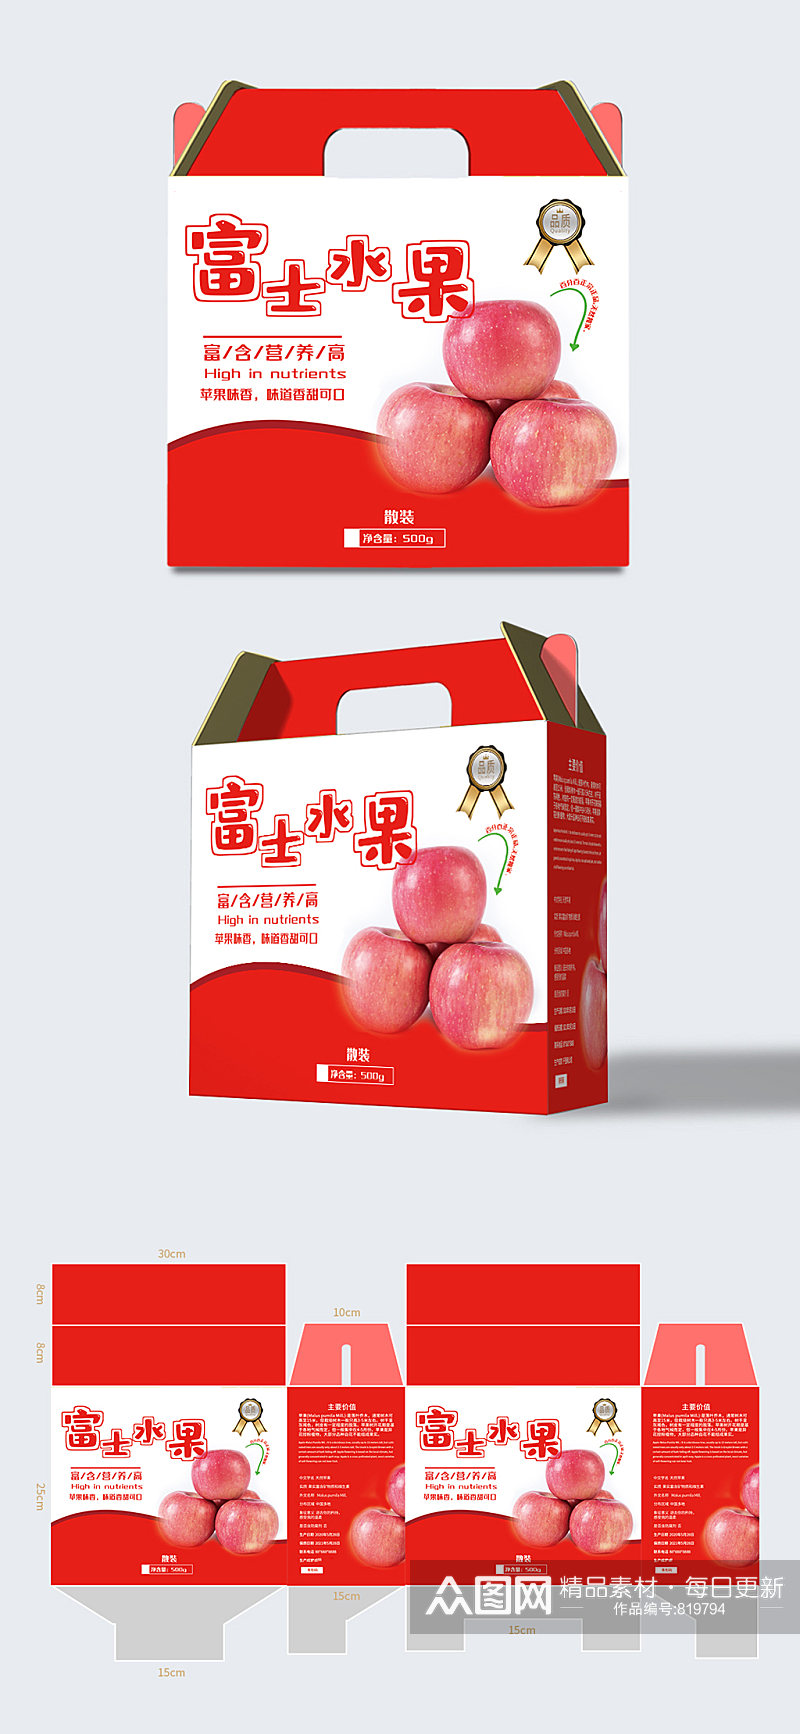 农产品水果苹果箱包装盒礼盒包装设计素材